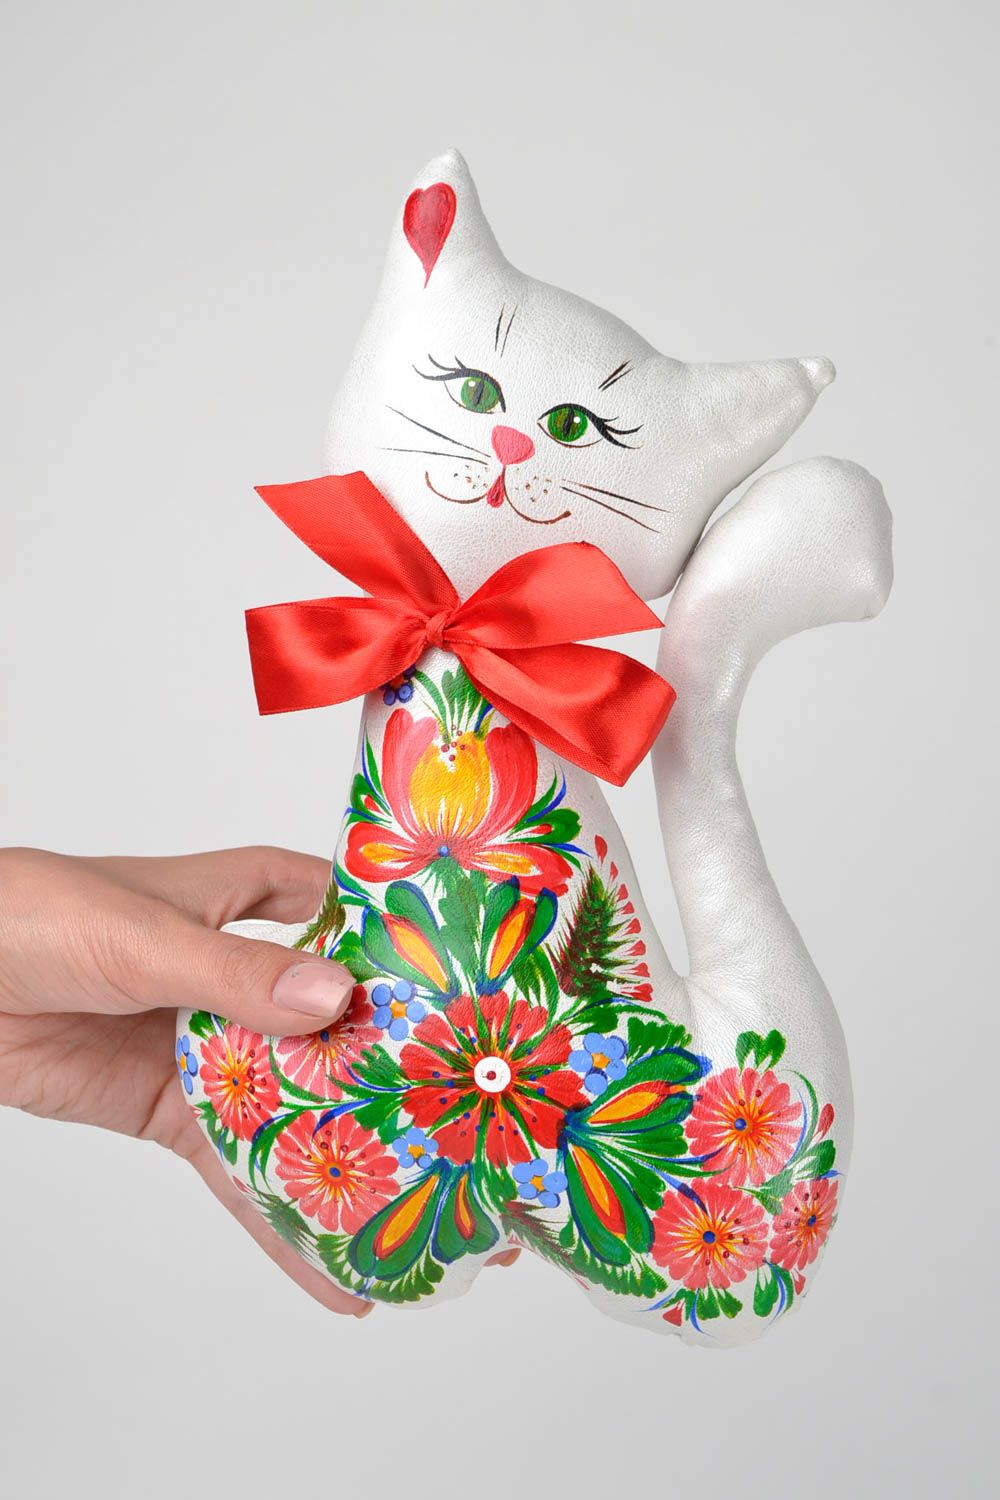 Игрушка кошка игрушка ручной работы интересный подарок Кошка с красным бантом фото 2